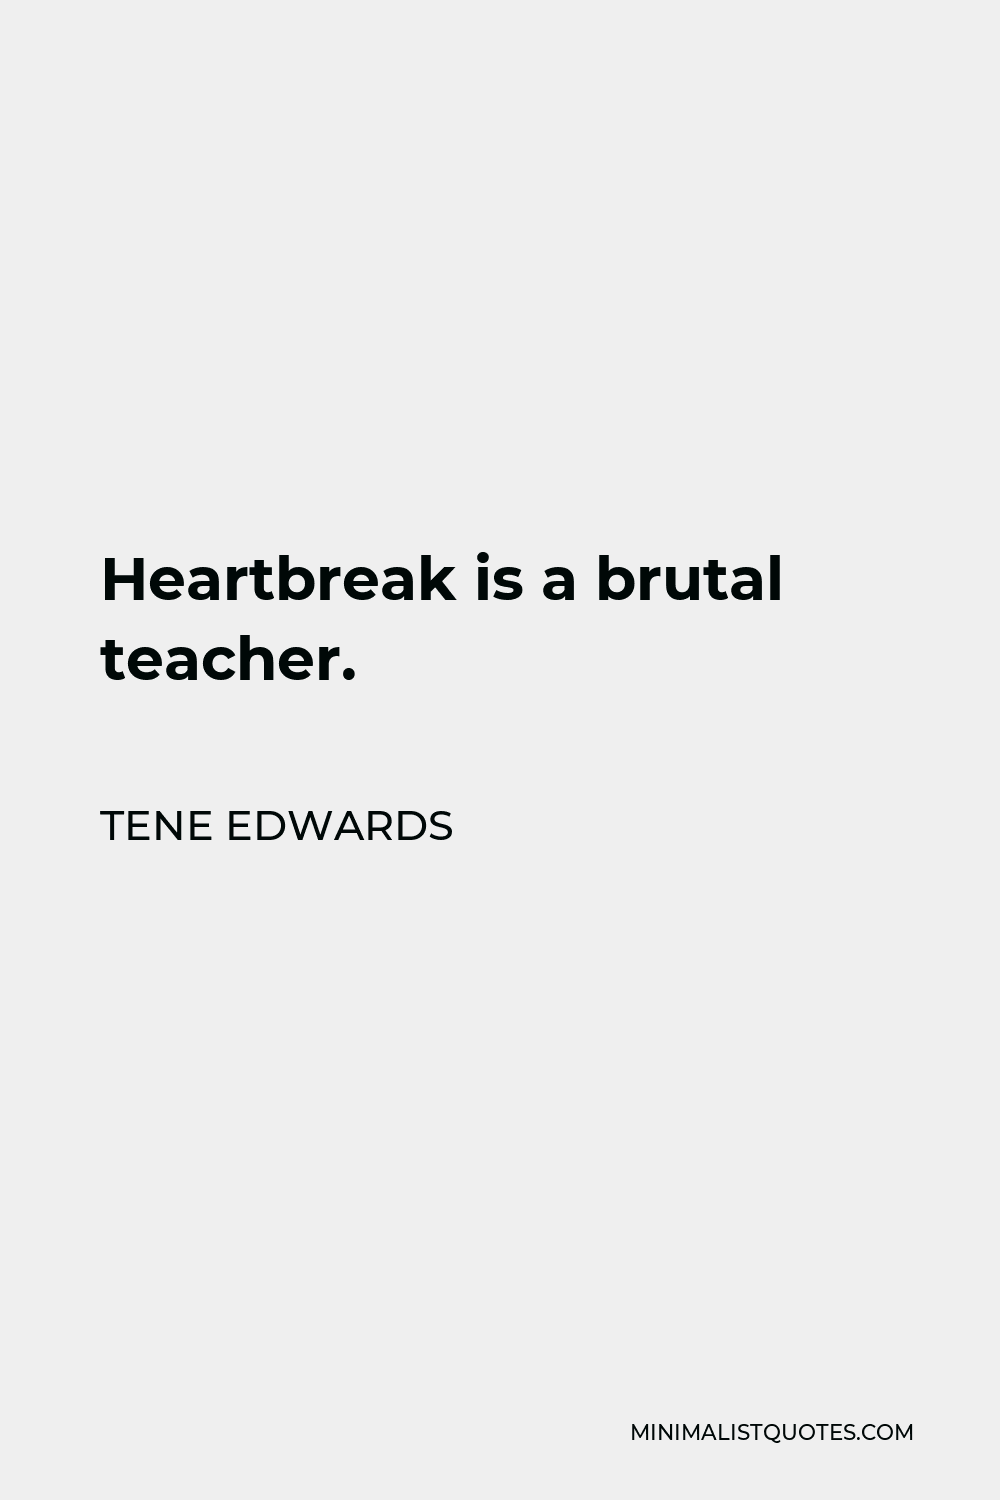 Tene Edwards Quote: Heartbreak is a brutal teacher.